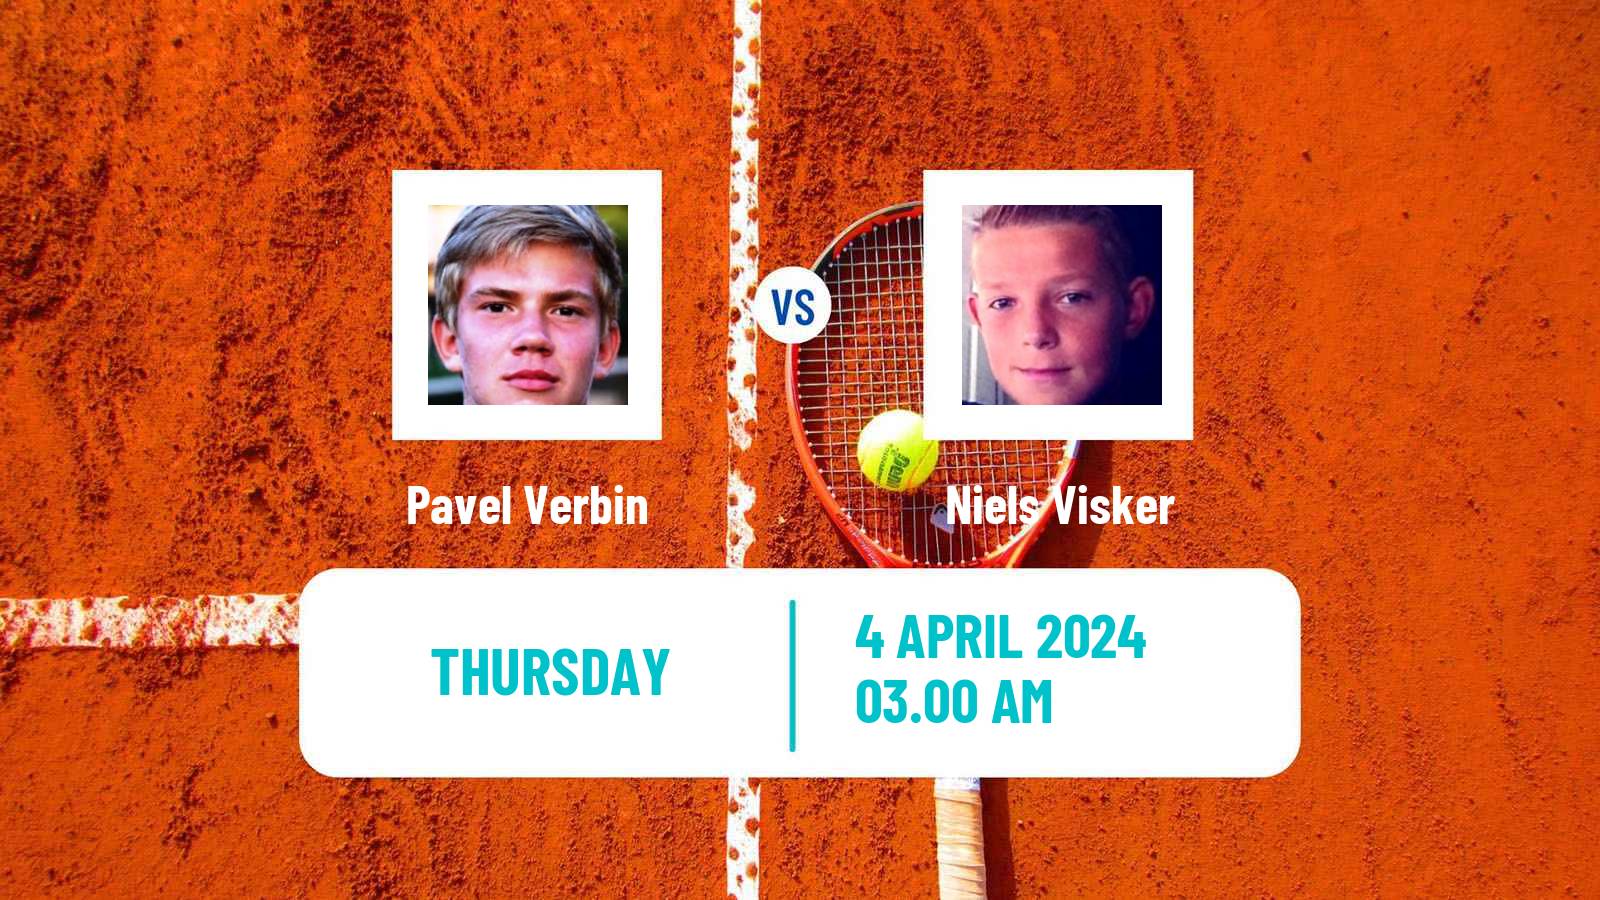 Tennis ITF M15 Antalya 9 Men Pavel Verbin - Niels Visker